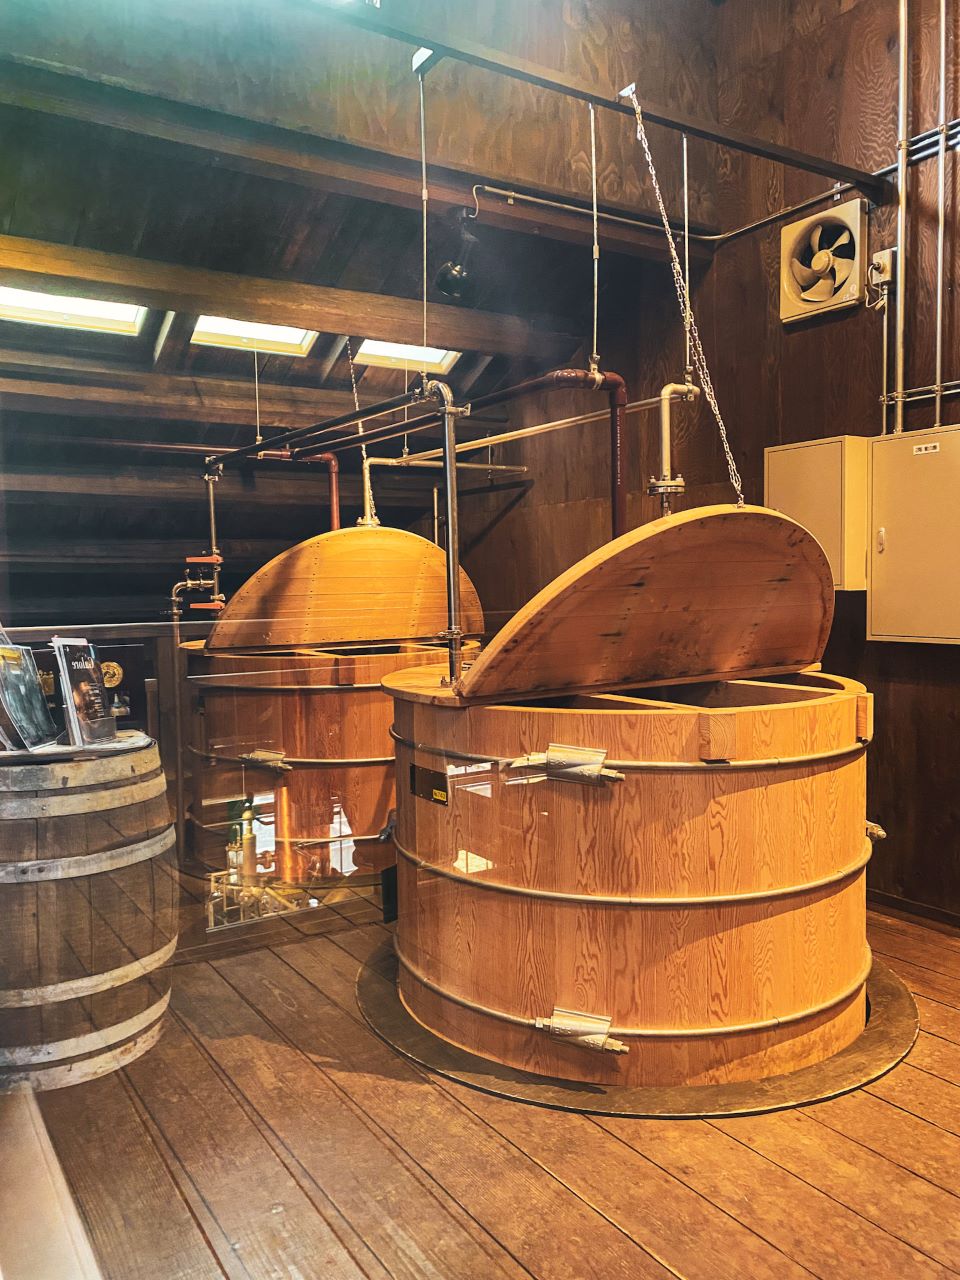 Wakatsuru distillery